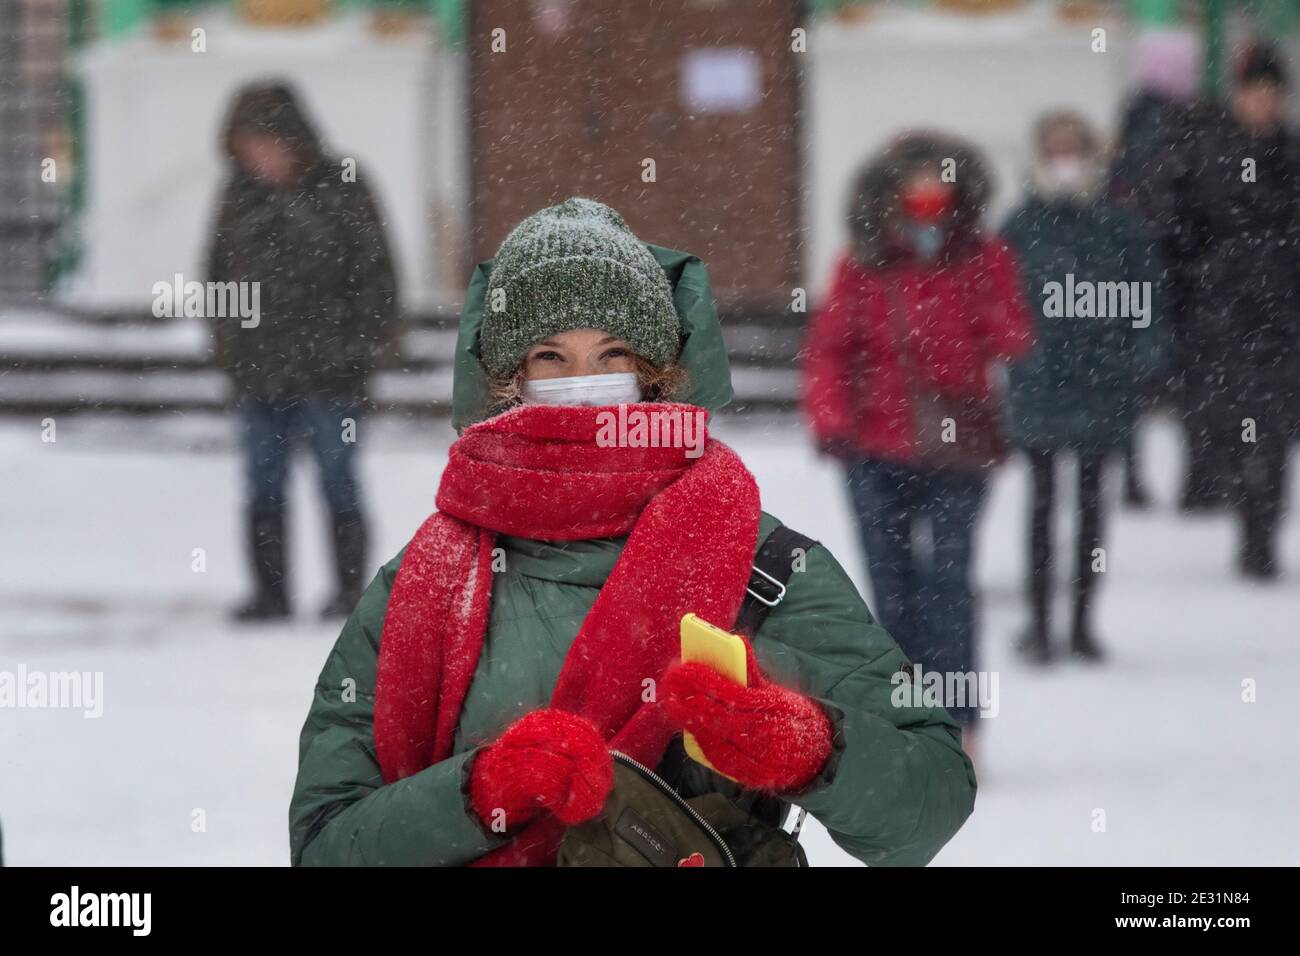 Moscou, Russie. 16 janvier, 2021 personnes marchent sur la place Manezhnaya pendant la chute de température à -15°C (5°F) et la chute de neige à Moscou, Russie Banque D'Images